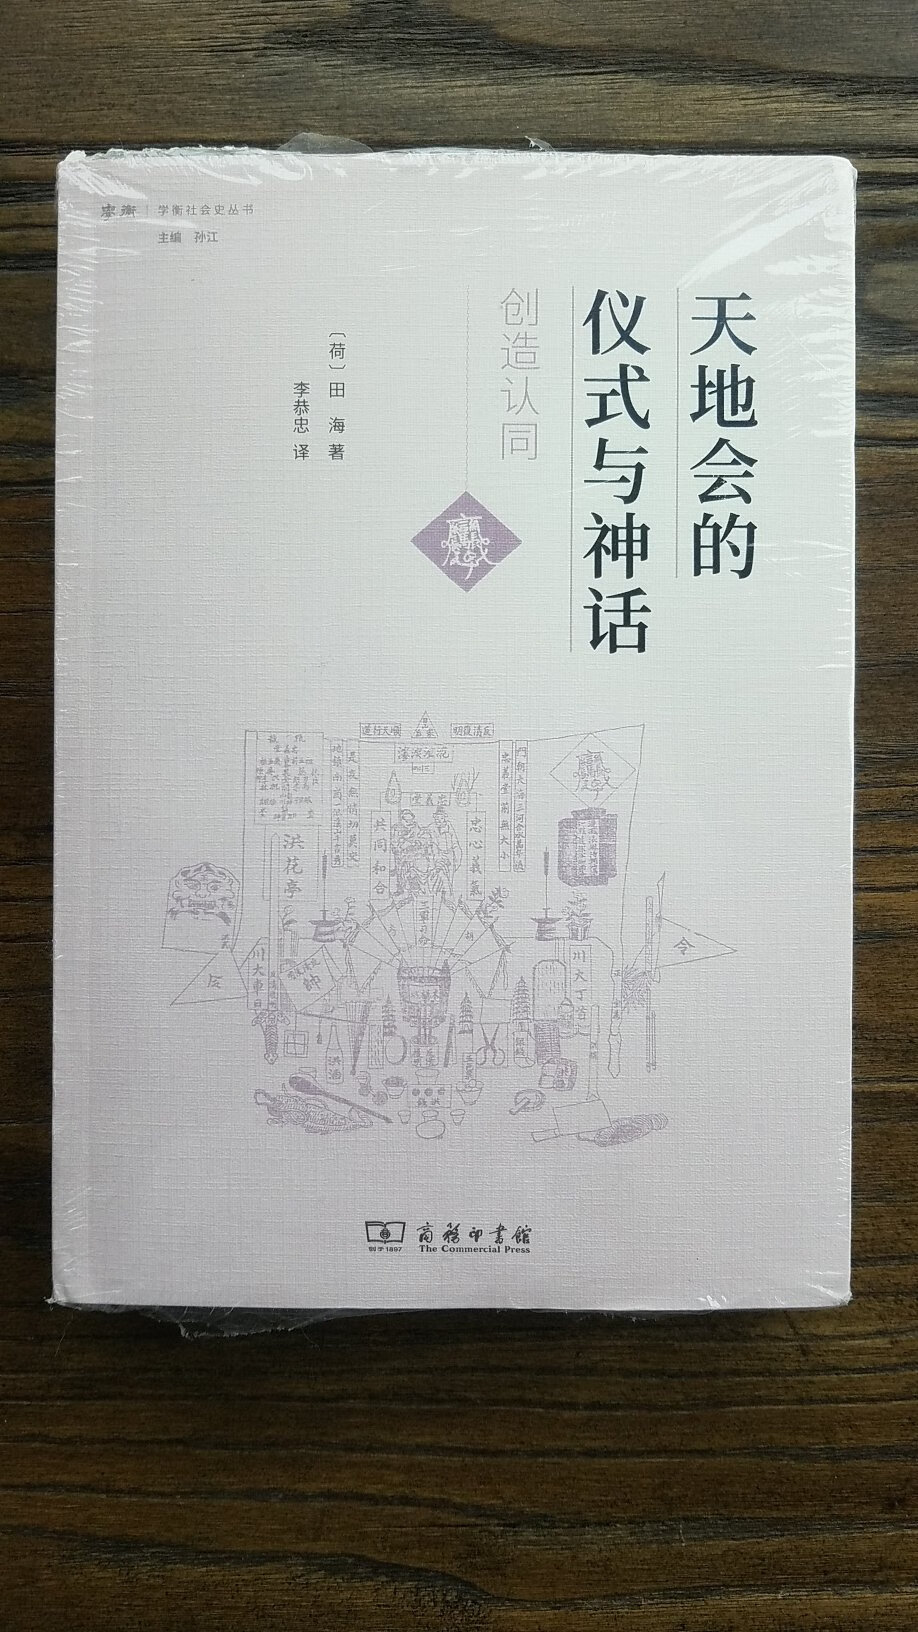 本书是近二十年来国际学术界关于天地会、中国秘密结社以及民间文化史研究的一部杰出著作